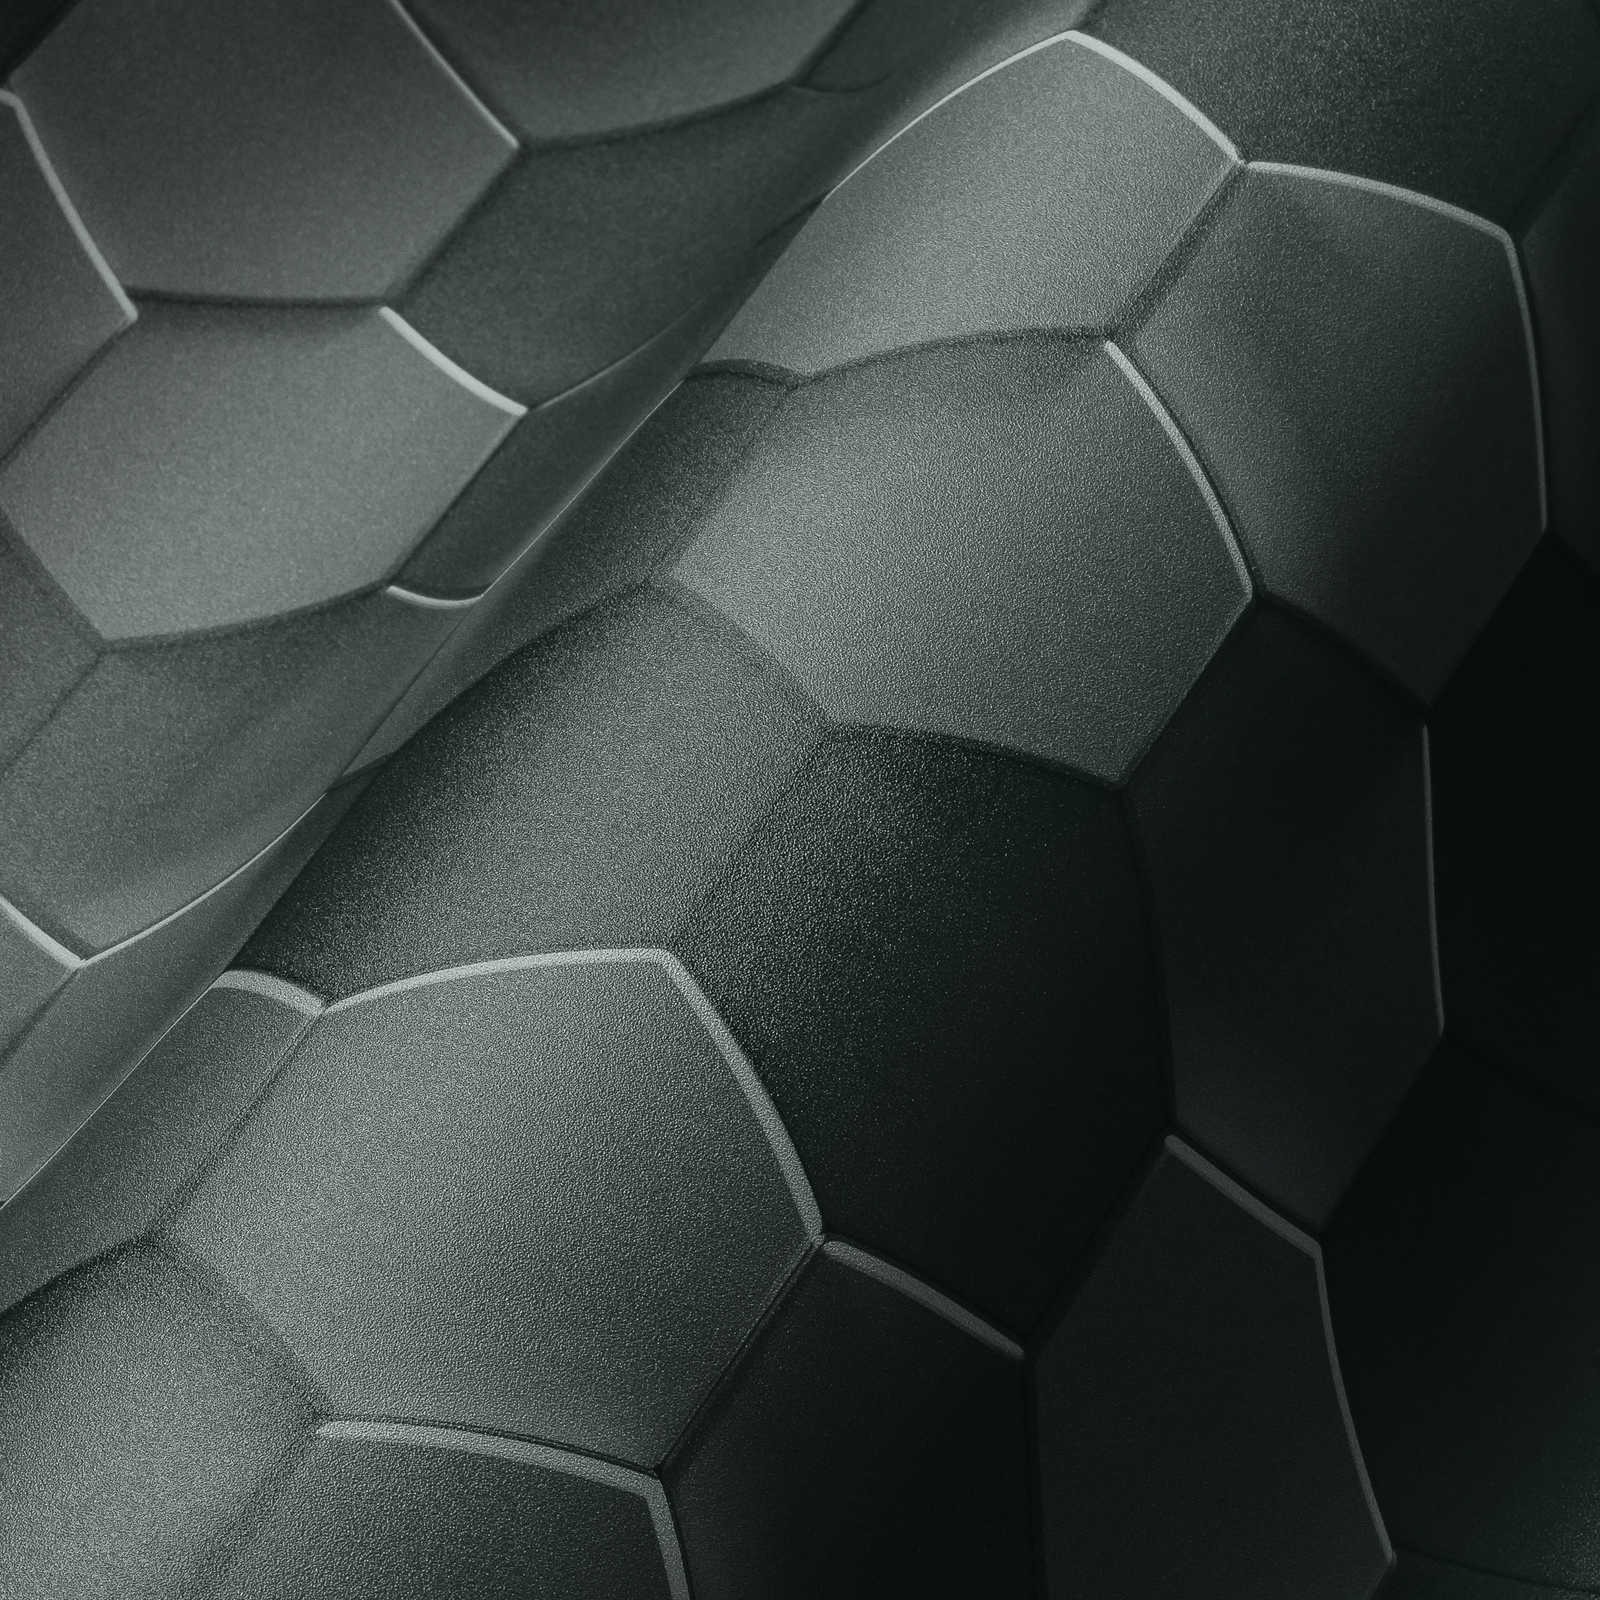             Carta da parati 3D esagonale con motivo grafico a nido d'ape - grigio, nero
        